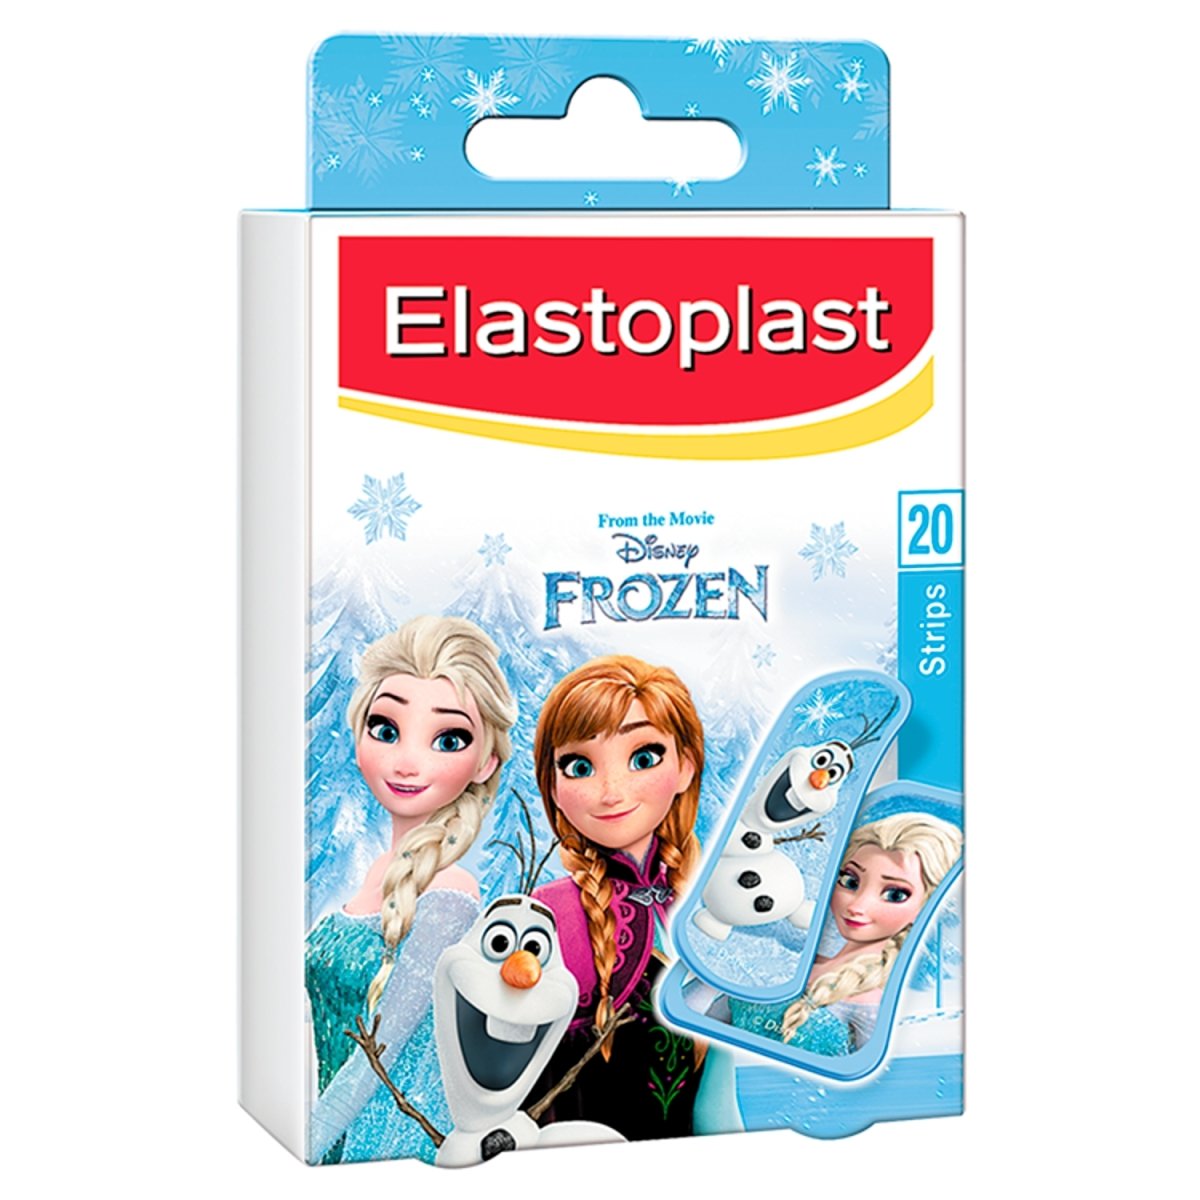 Elastoplast Frozen Plasters - Intamarque 4005800187728